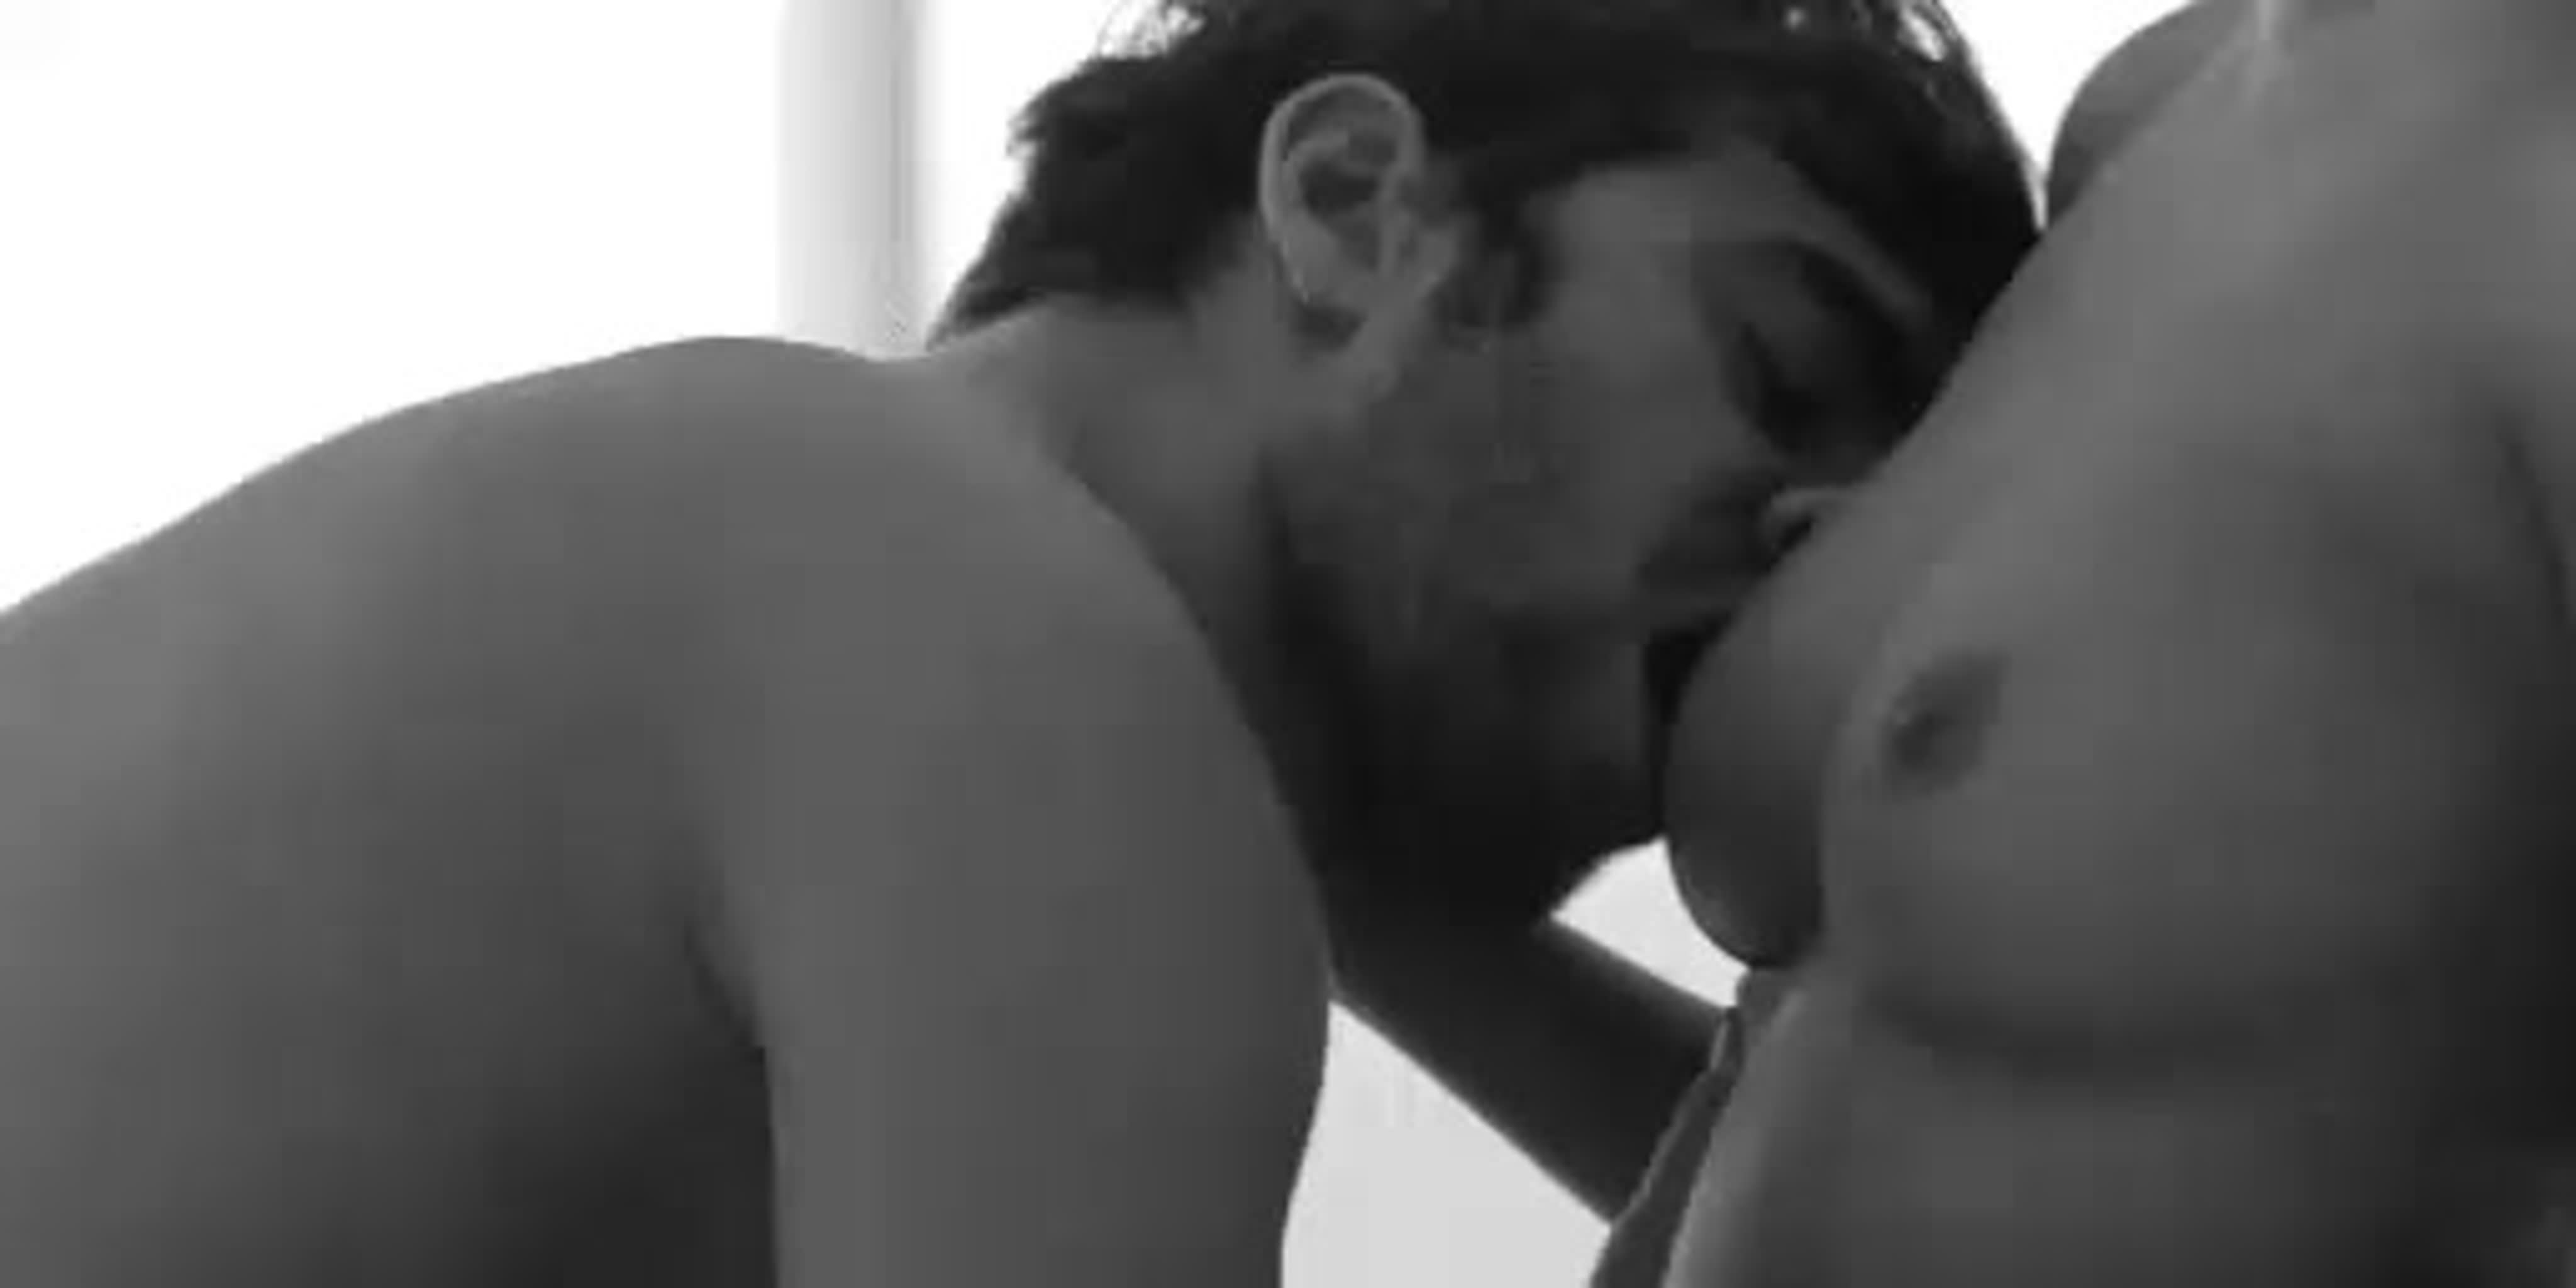 Грудь поцелуй порно видео. Смотреть грудь поцелуй онлайн